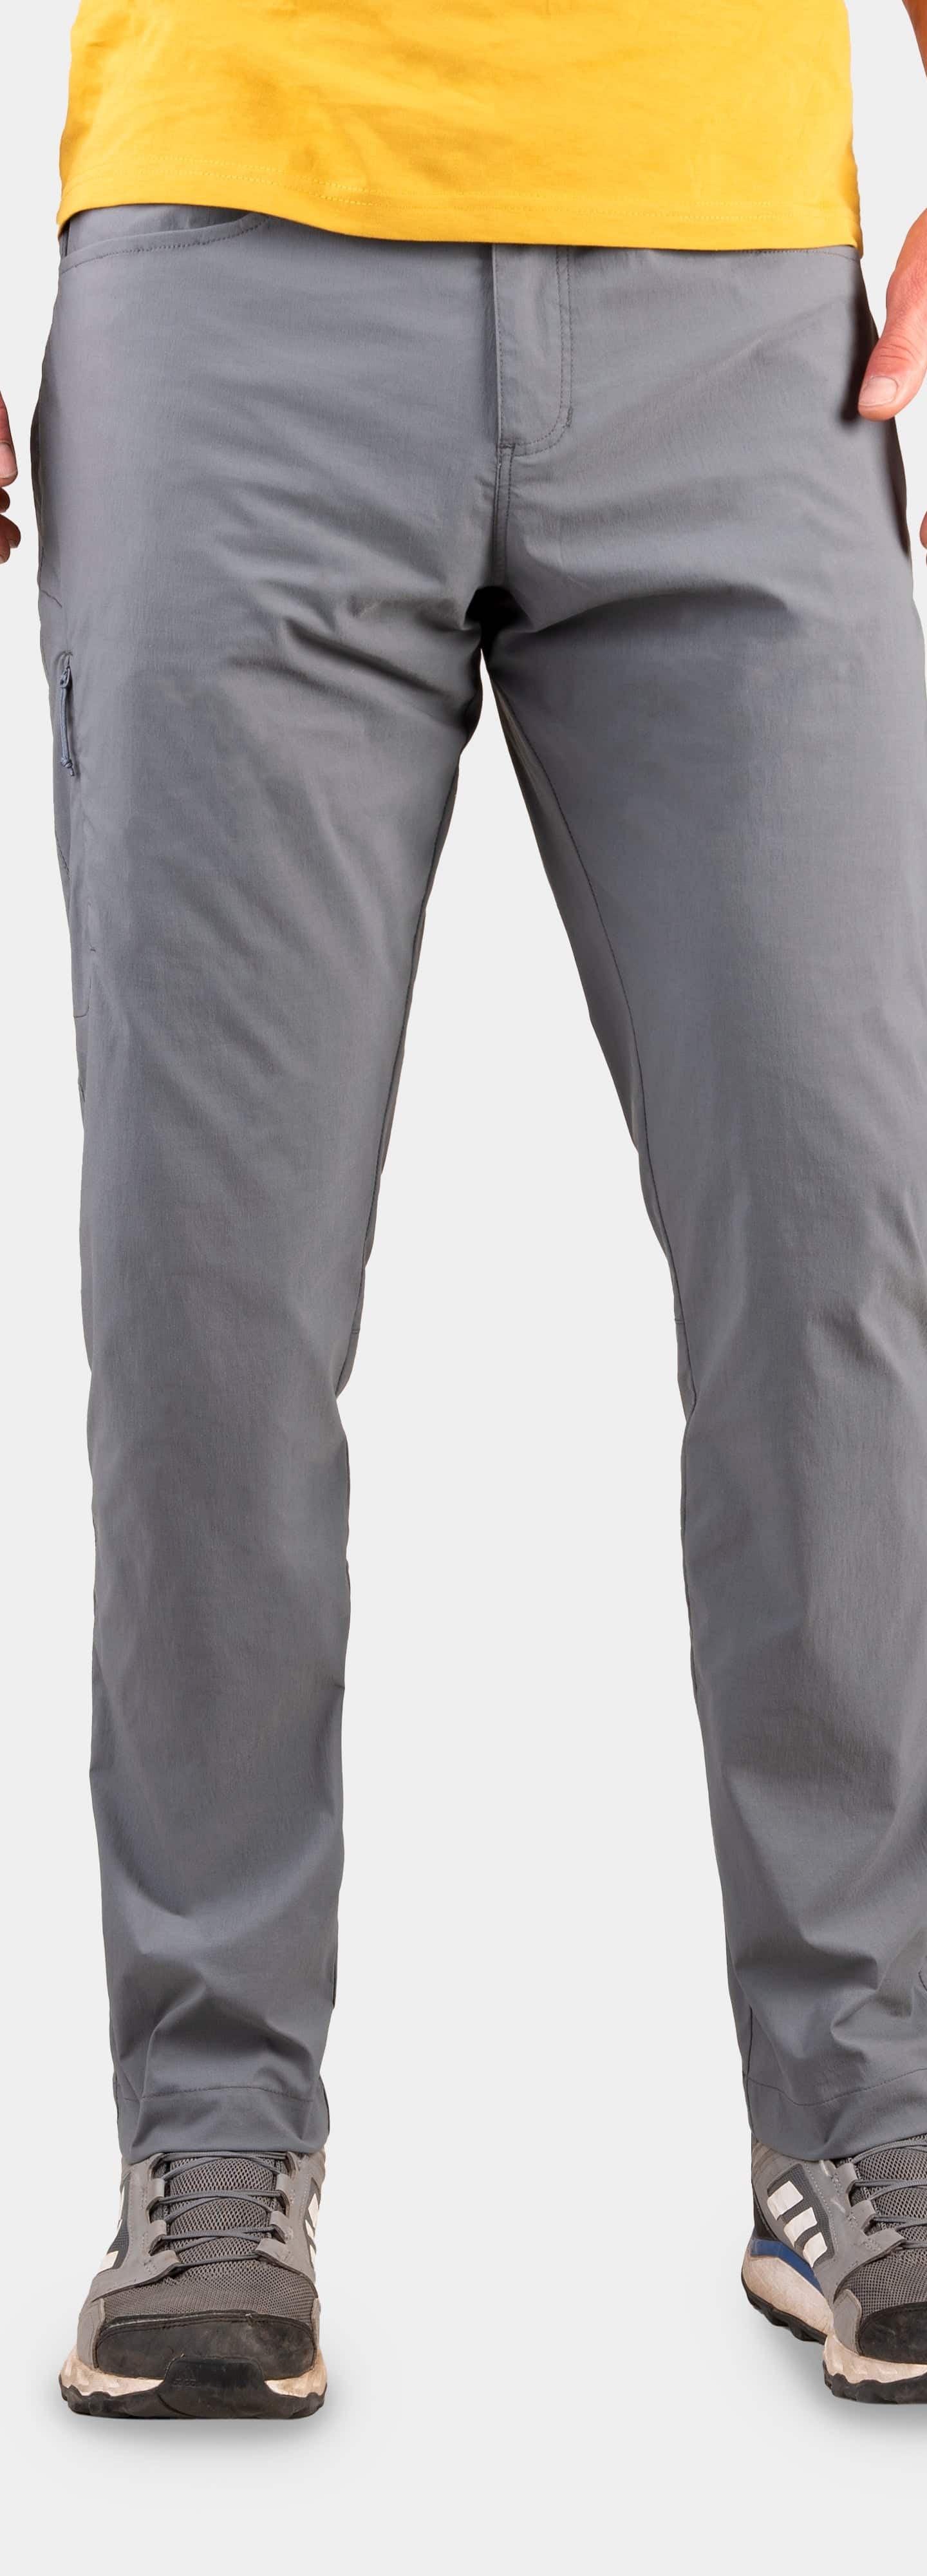 Teleki Men's Lightweight Walking Trousers